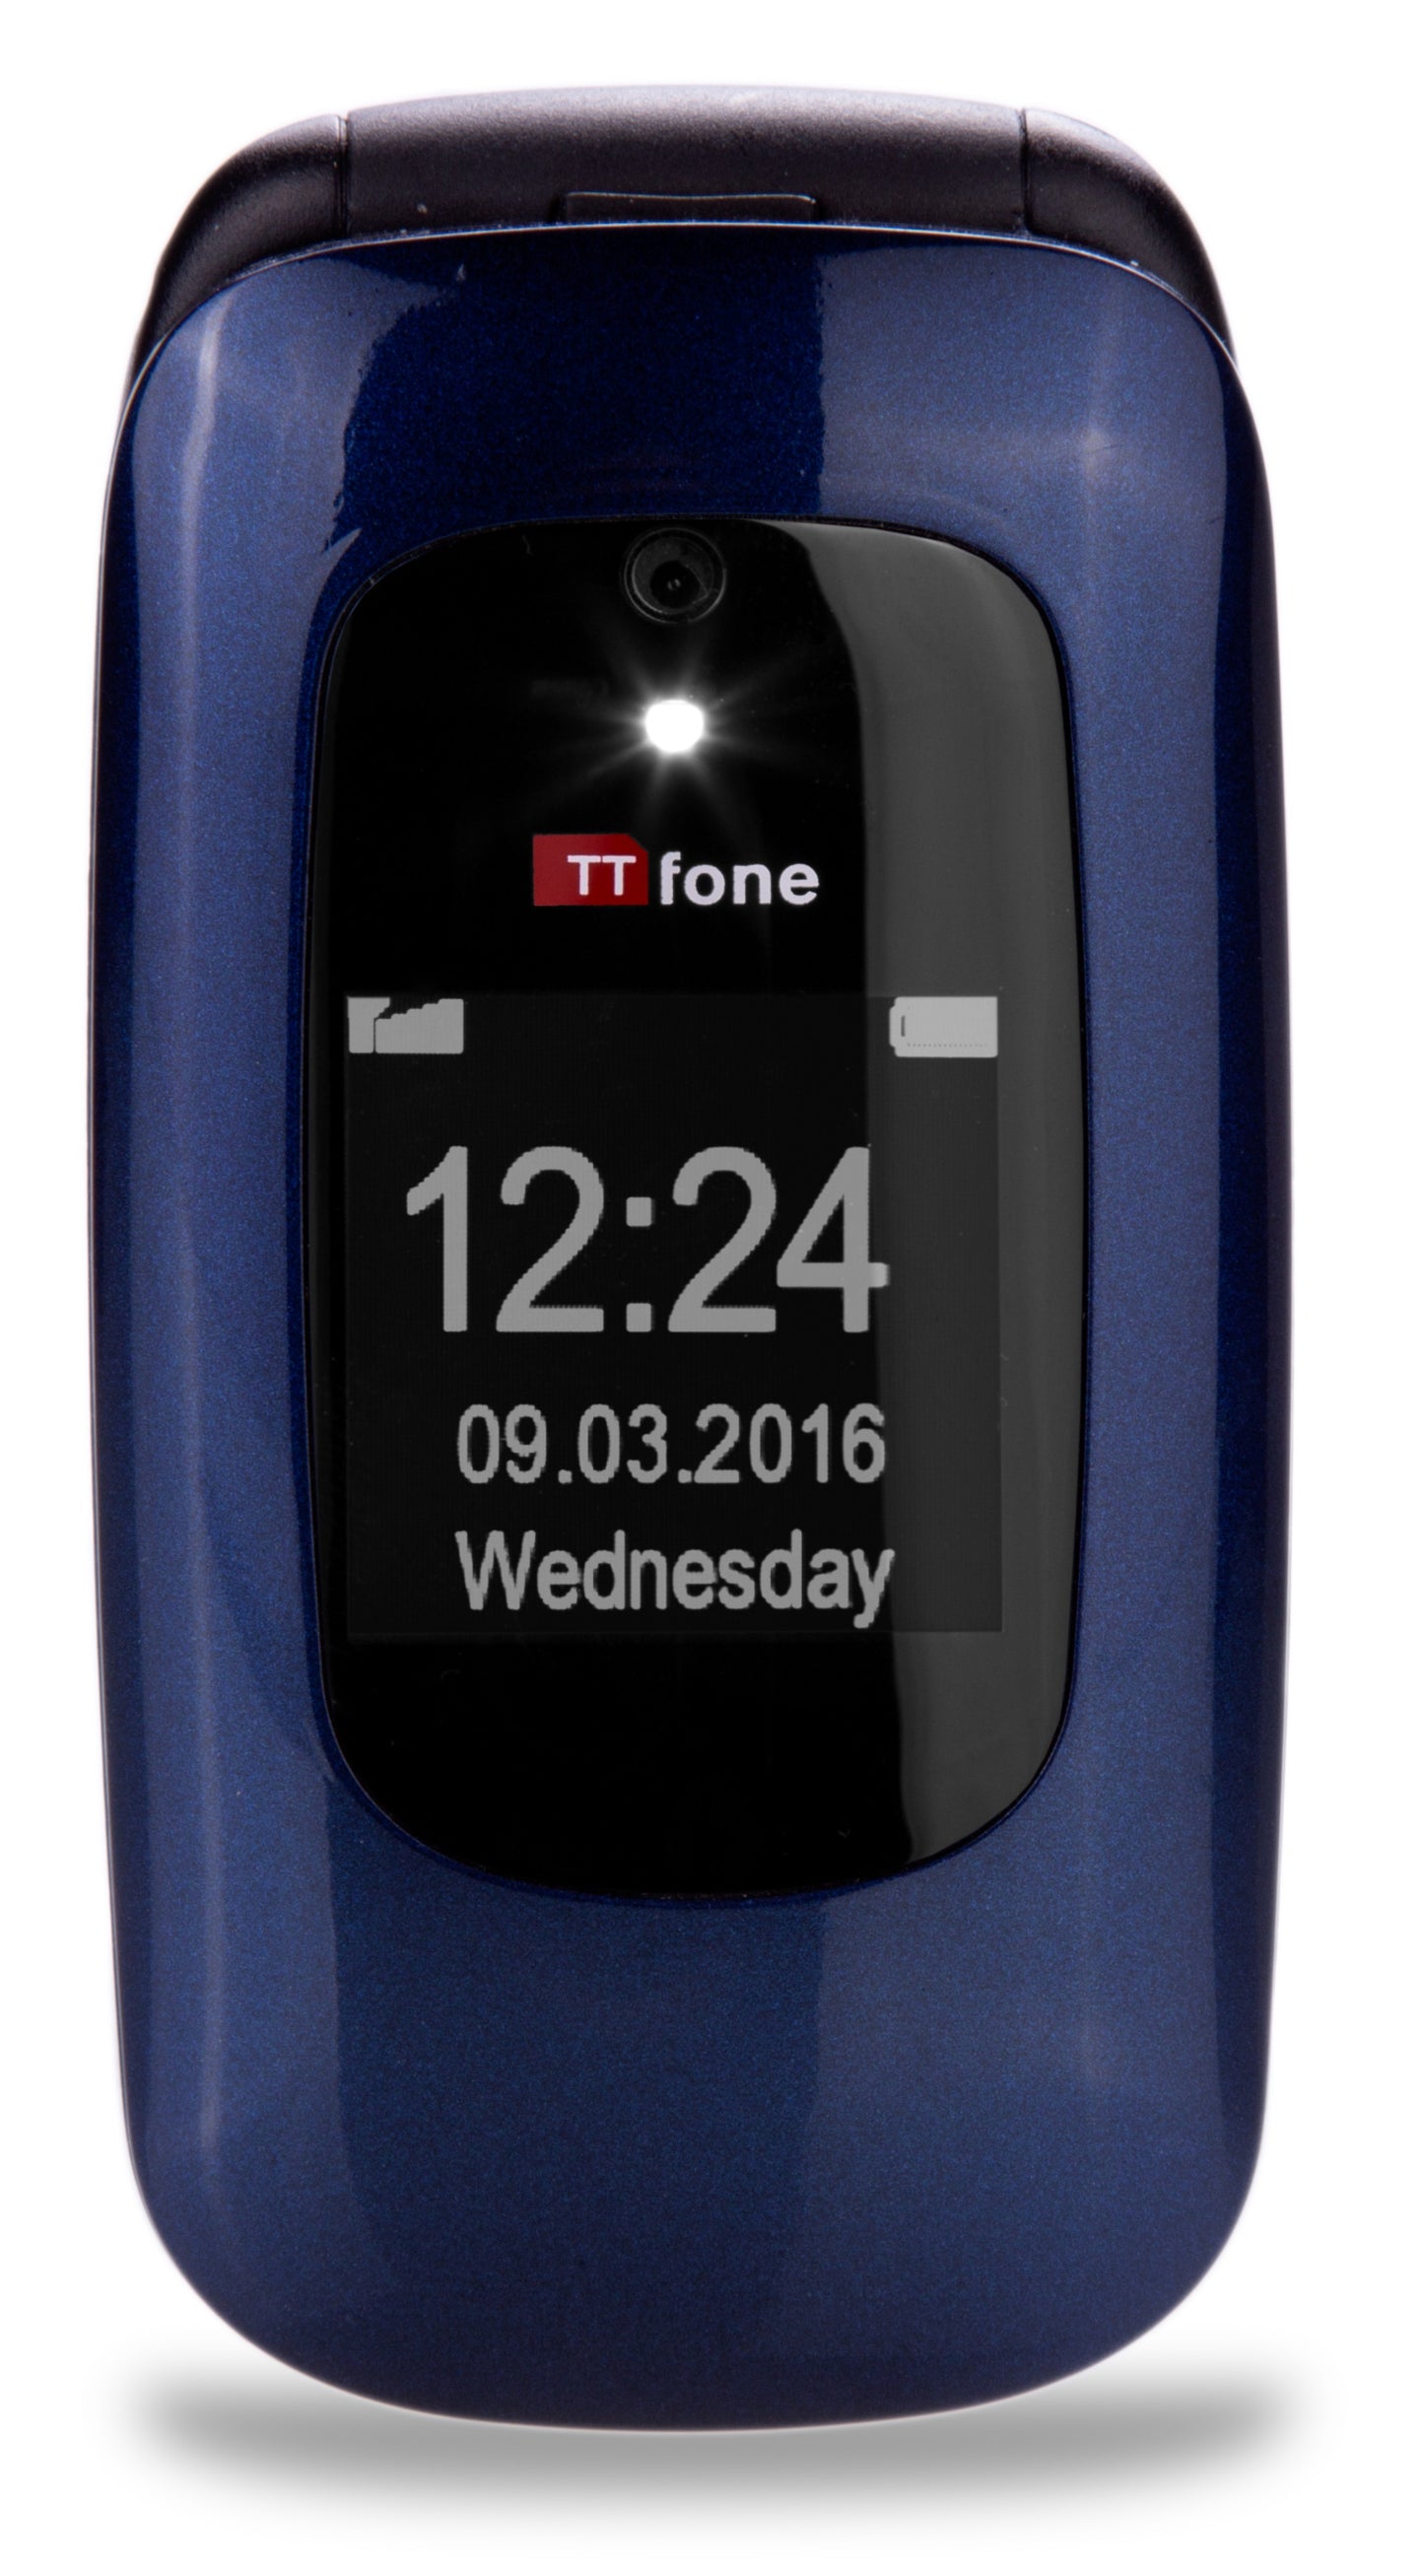 TTfone Blue Lunar TT750 - Warehouse Deals with No Sim Card